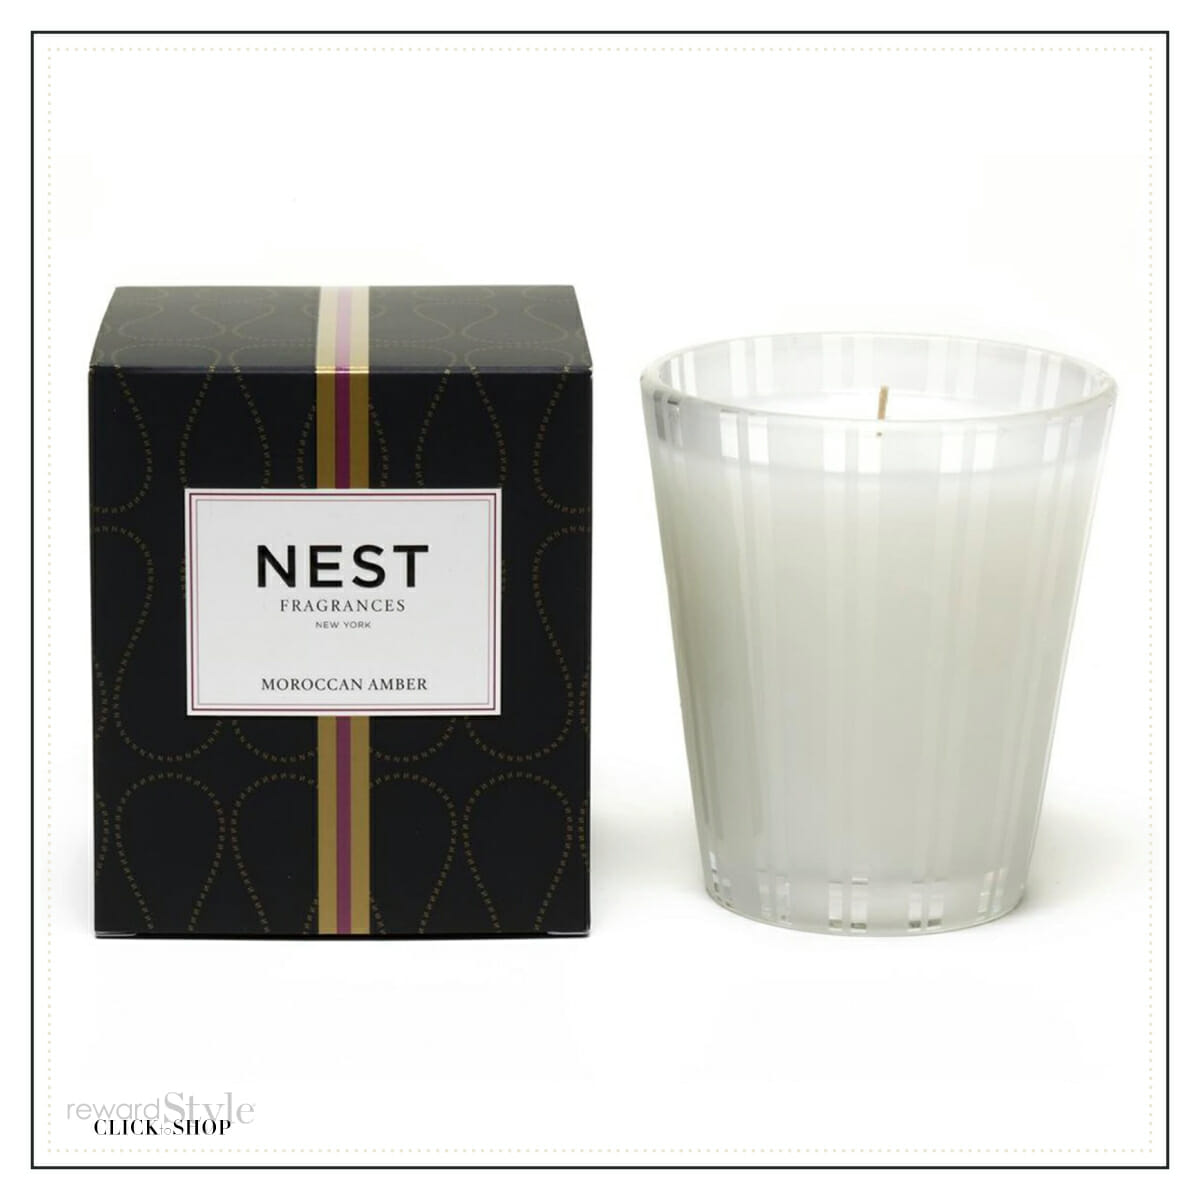 Nest home fragrance